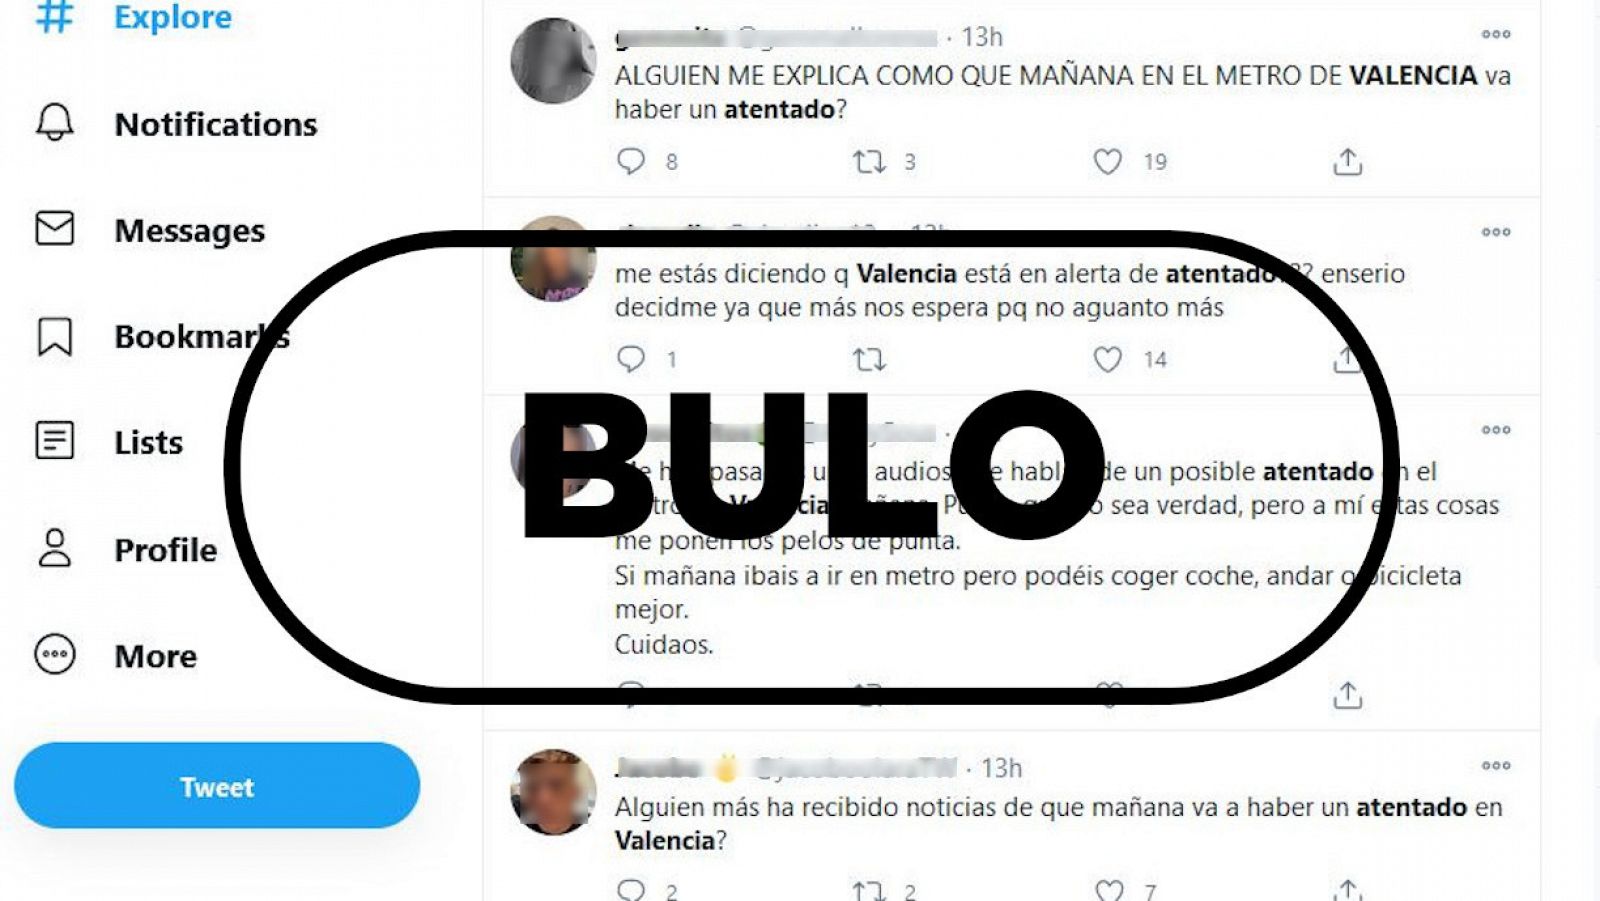 Captura con algunos de los tuits comentando el bulo del atentado en Valencia.